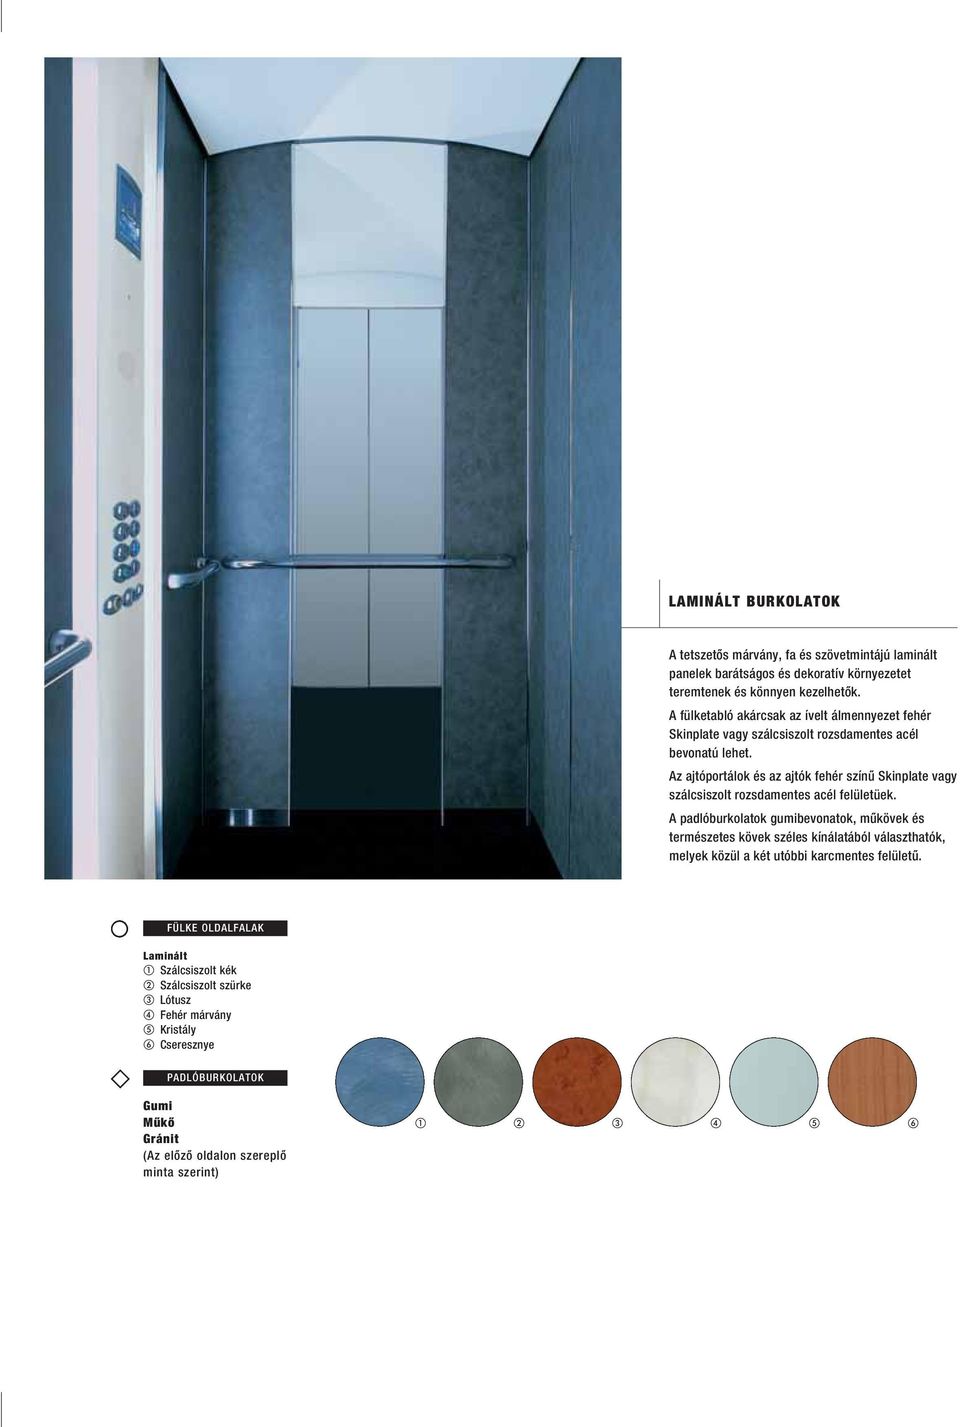 Az ajtóportálok és az ajtók fehér színû Skinplate vagy szálcsiszolt rozsdamentes acél felületüek.